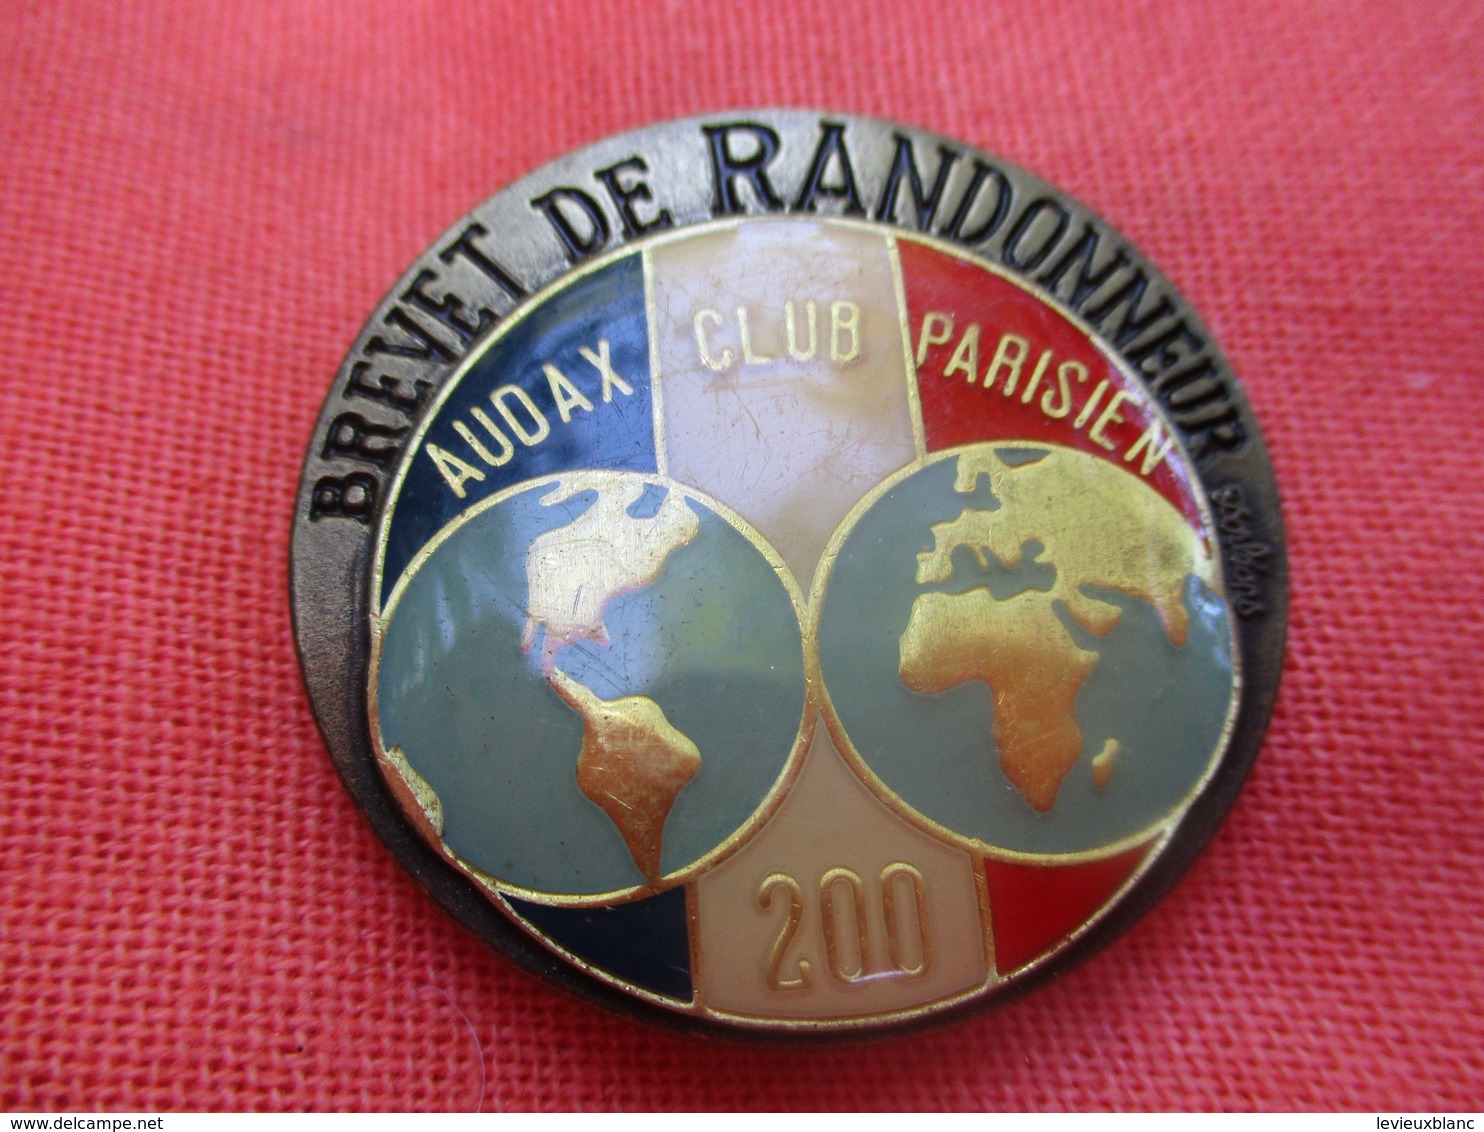 Insigne De Sport  à épingle/ Cyclisme/  Audax Club Parisien/Brevet De RANDONNEUR/200 Km/Beraudy/Vers 1980         SPO304 - Radsport